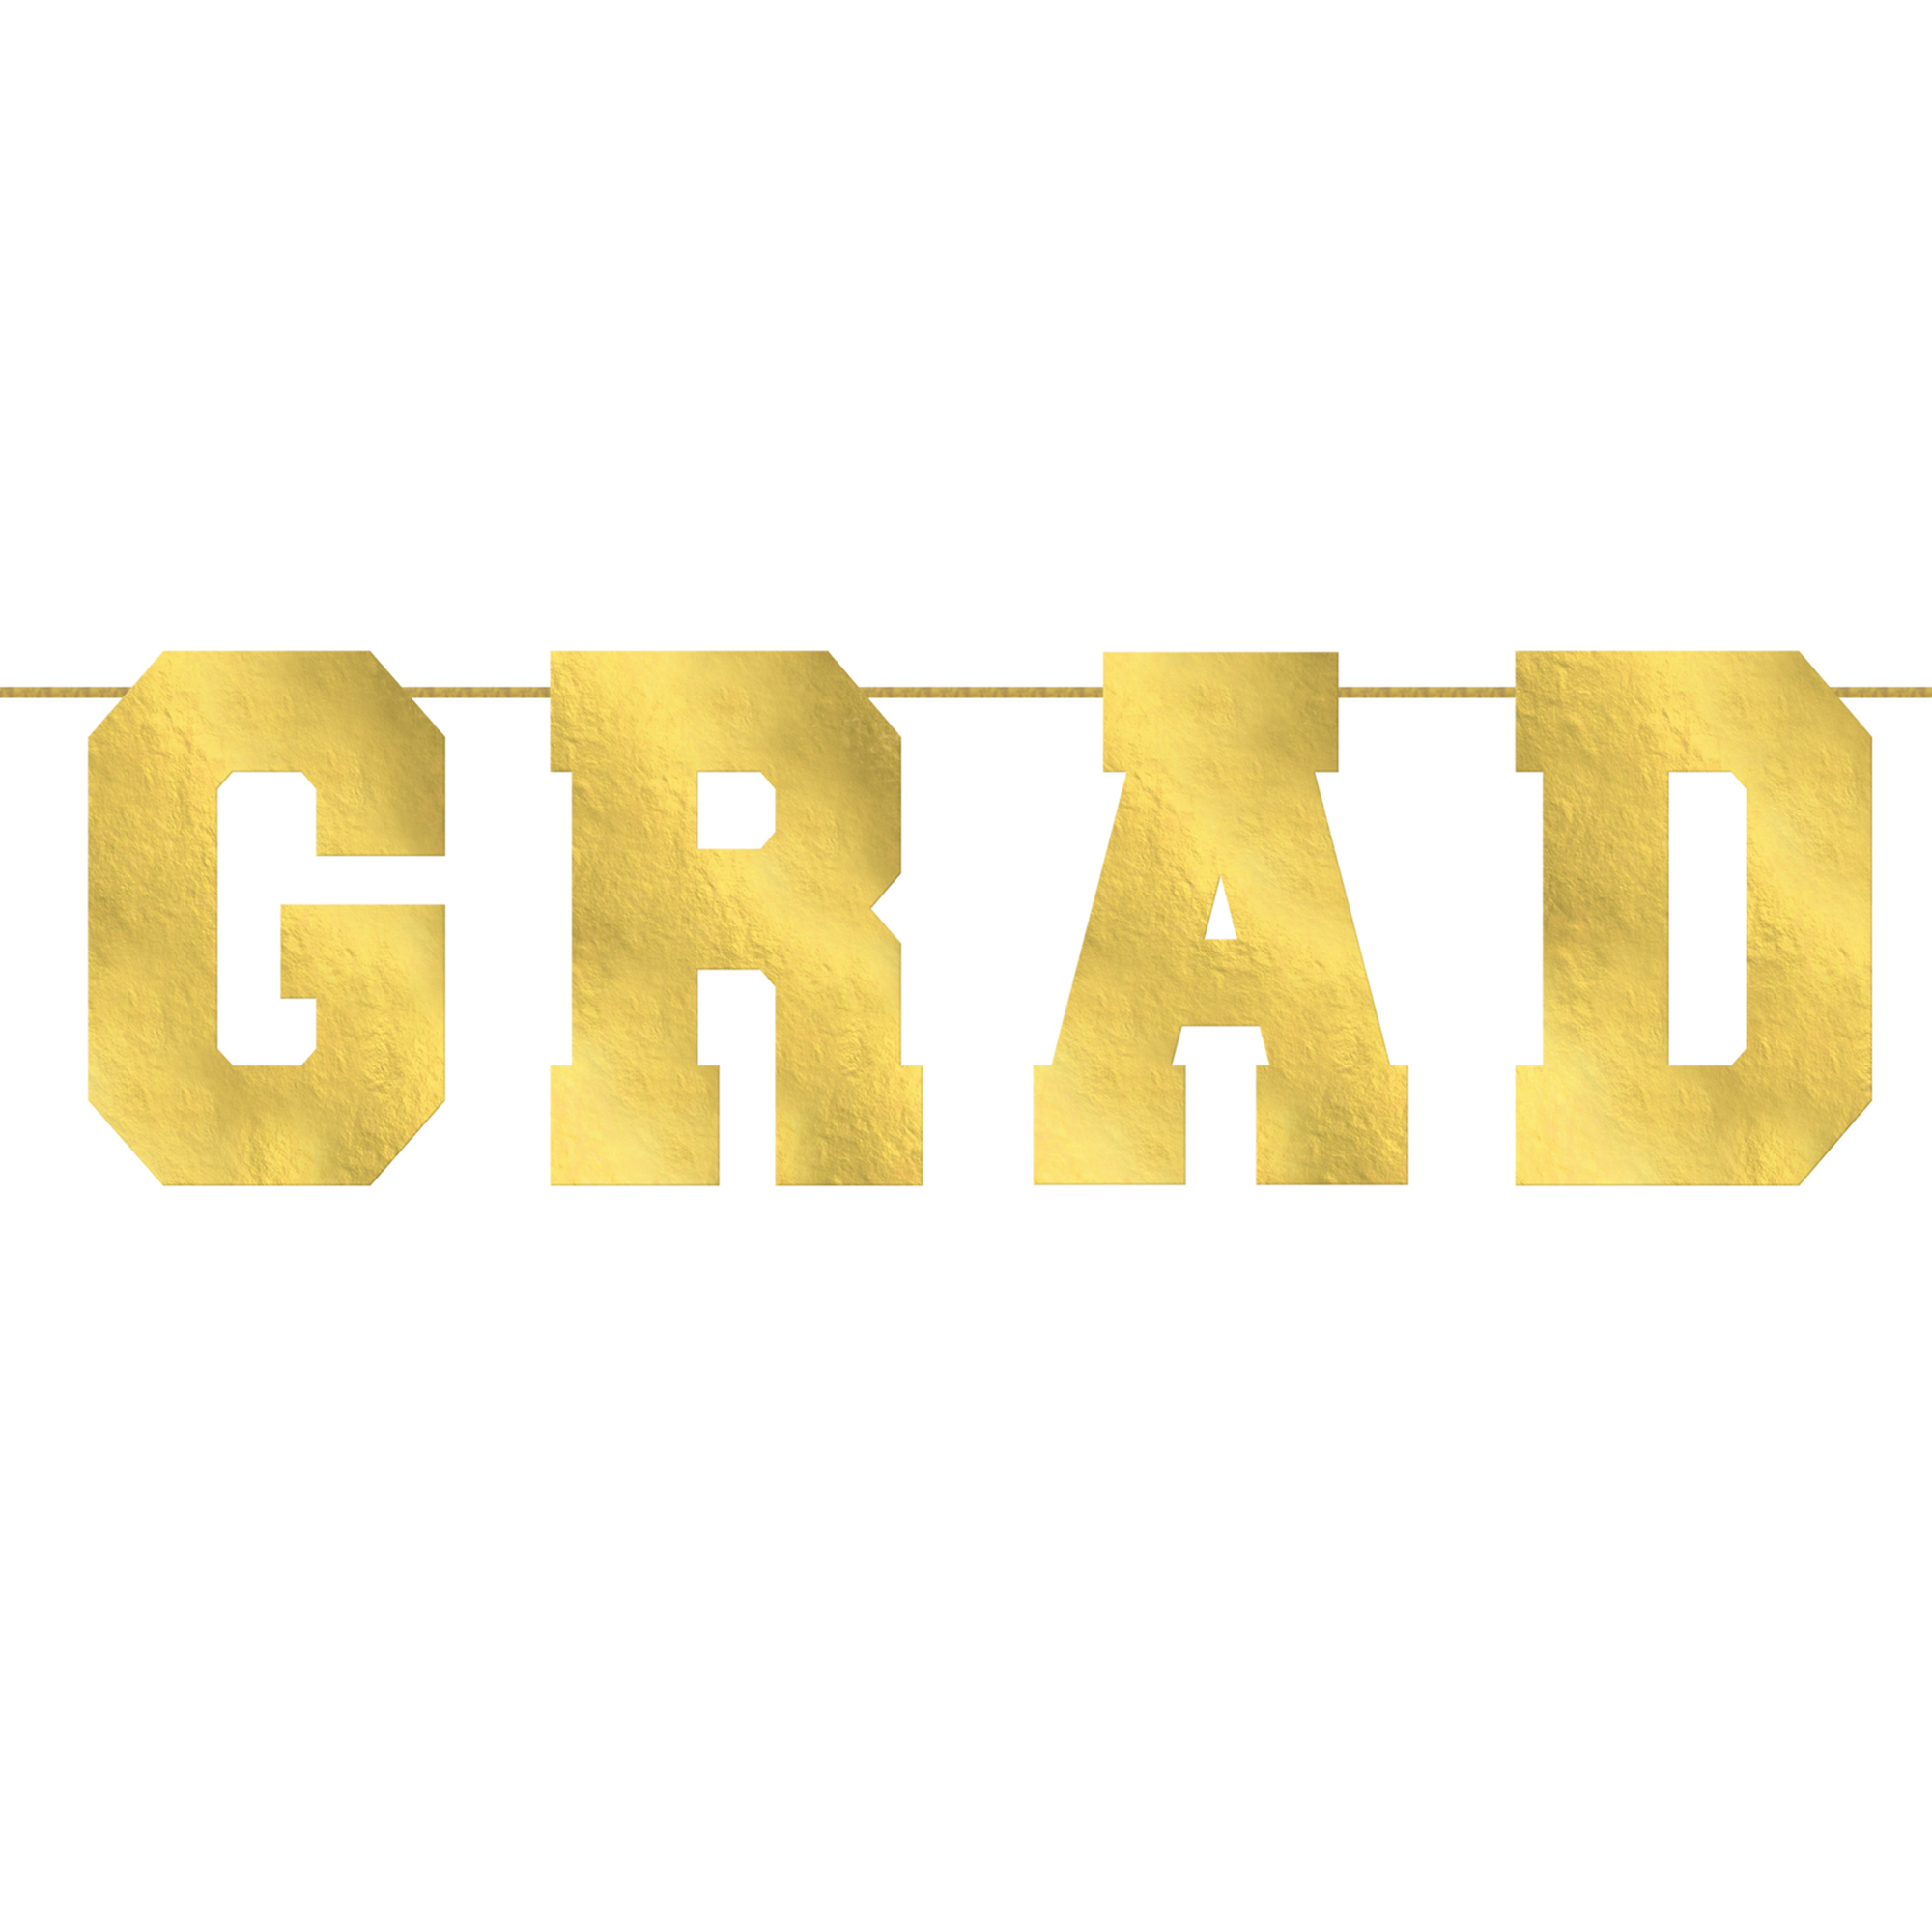 Gold Grad Collegiate Banner